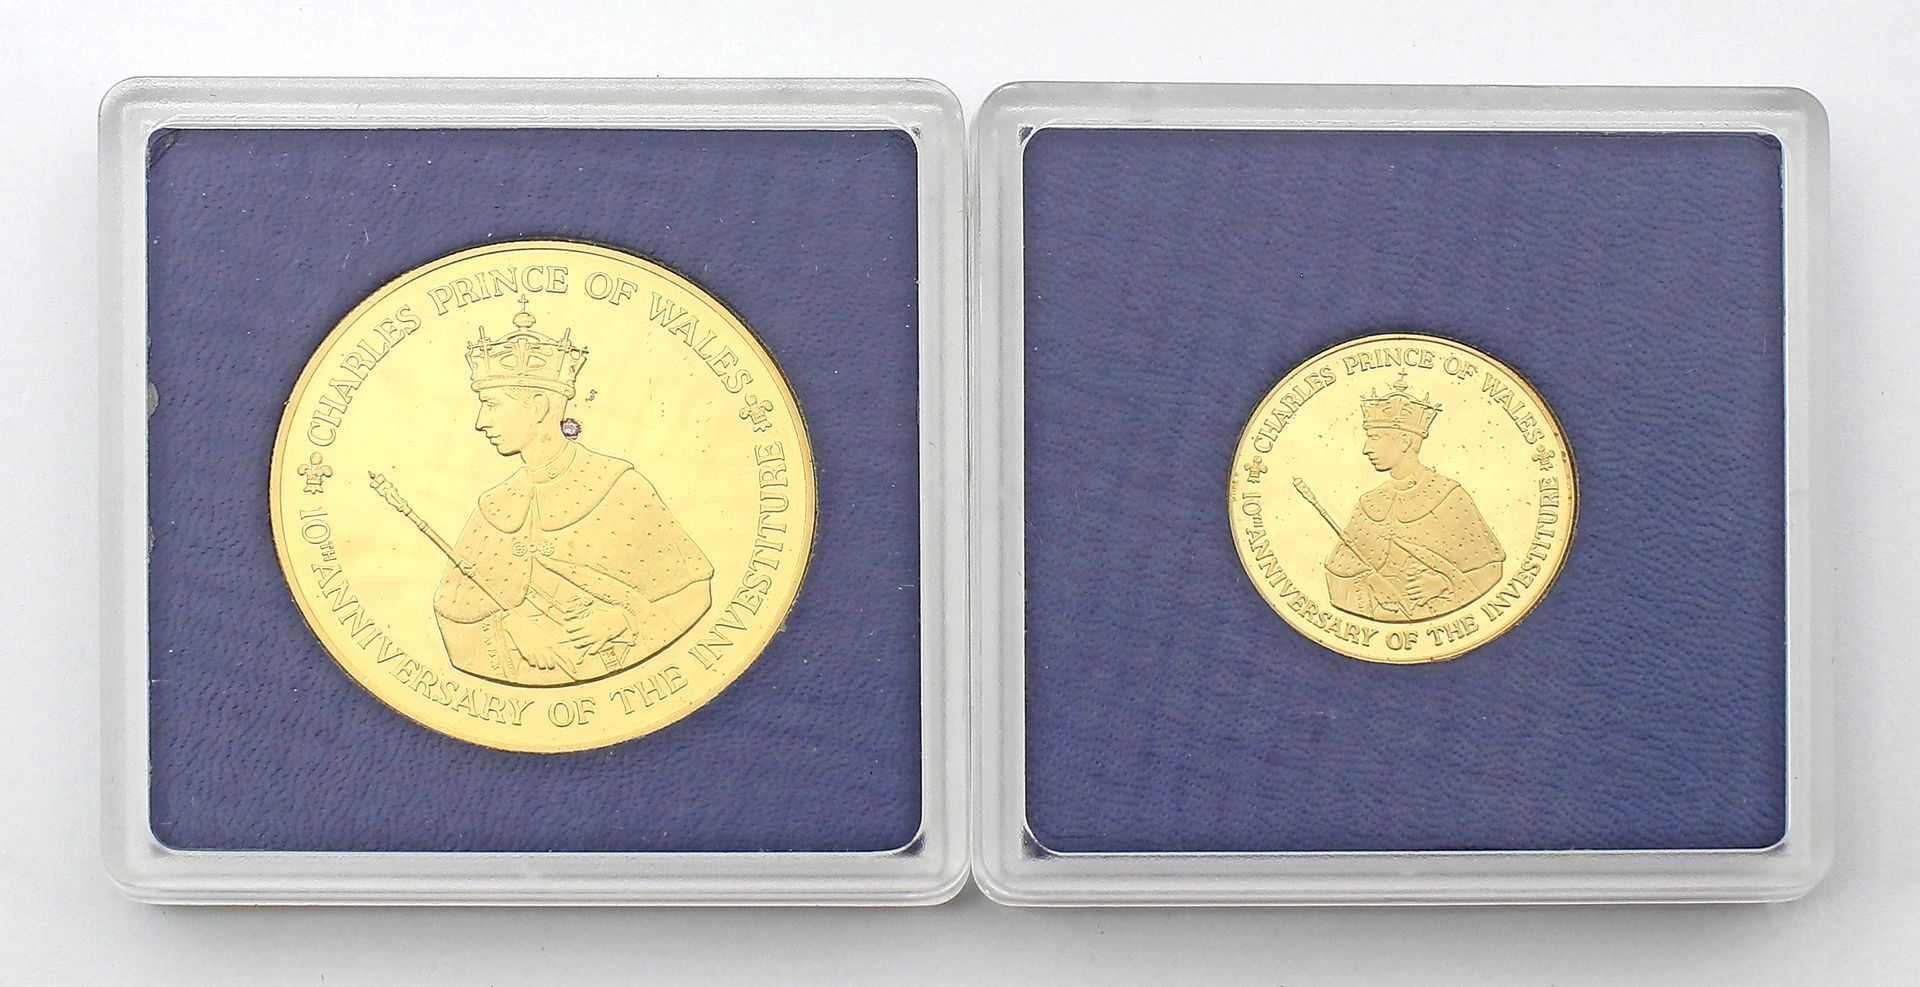 Jamaica, 250 und 100 $, 1979. - Bild 3 aus 3